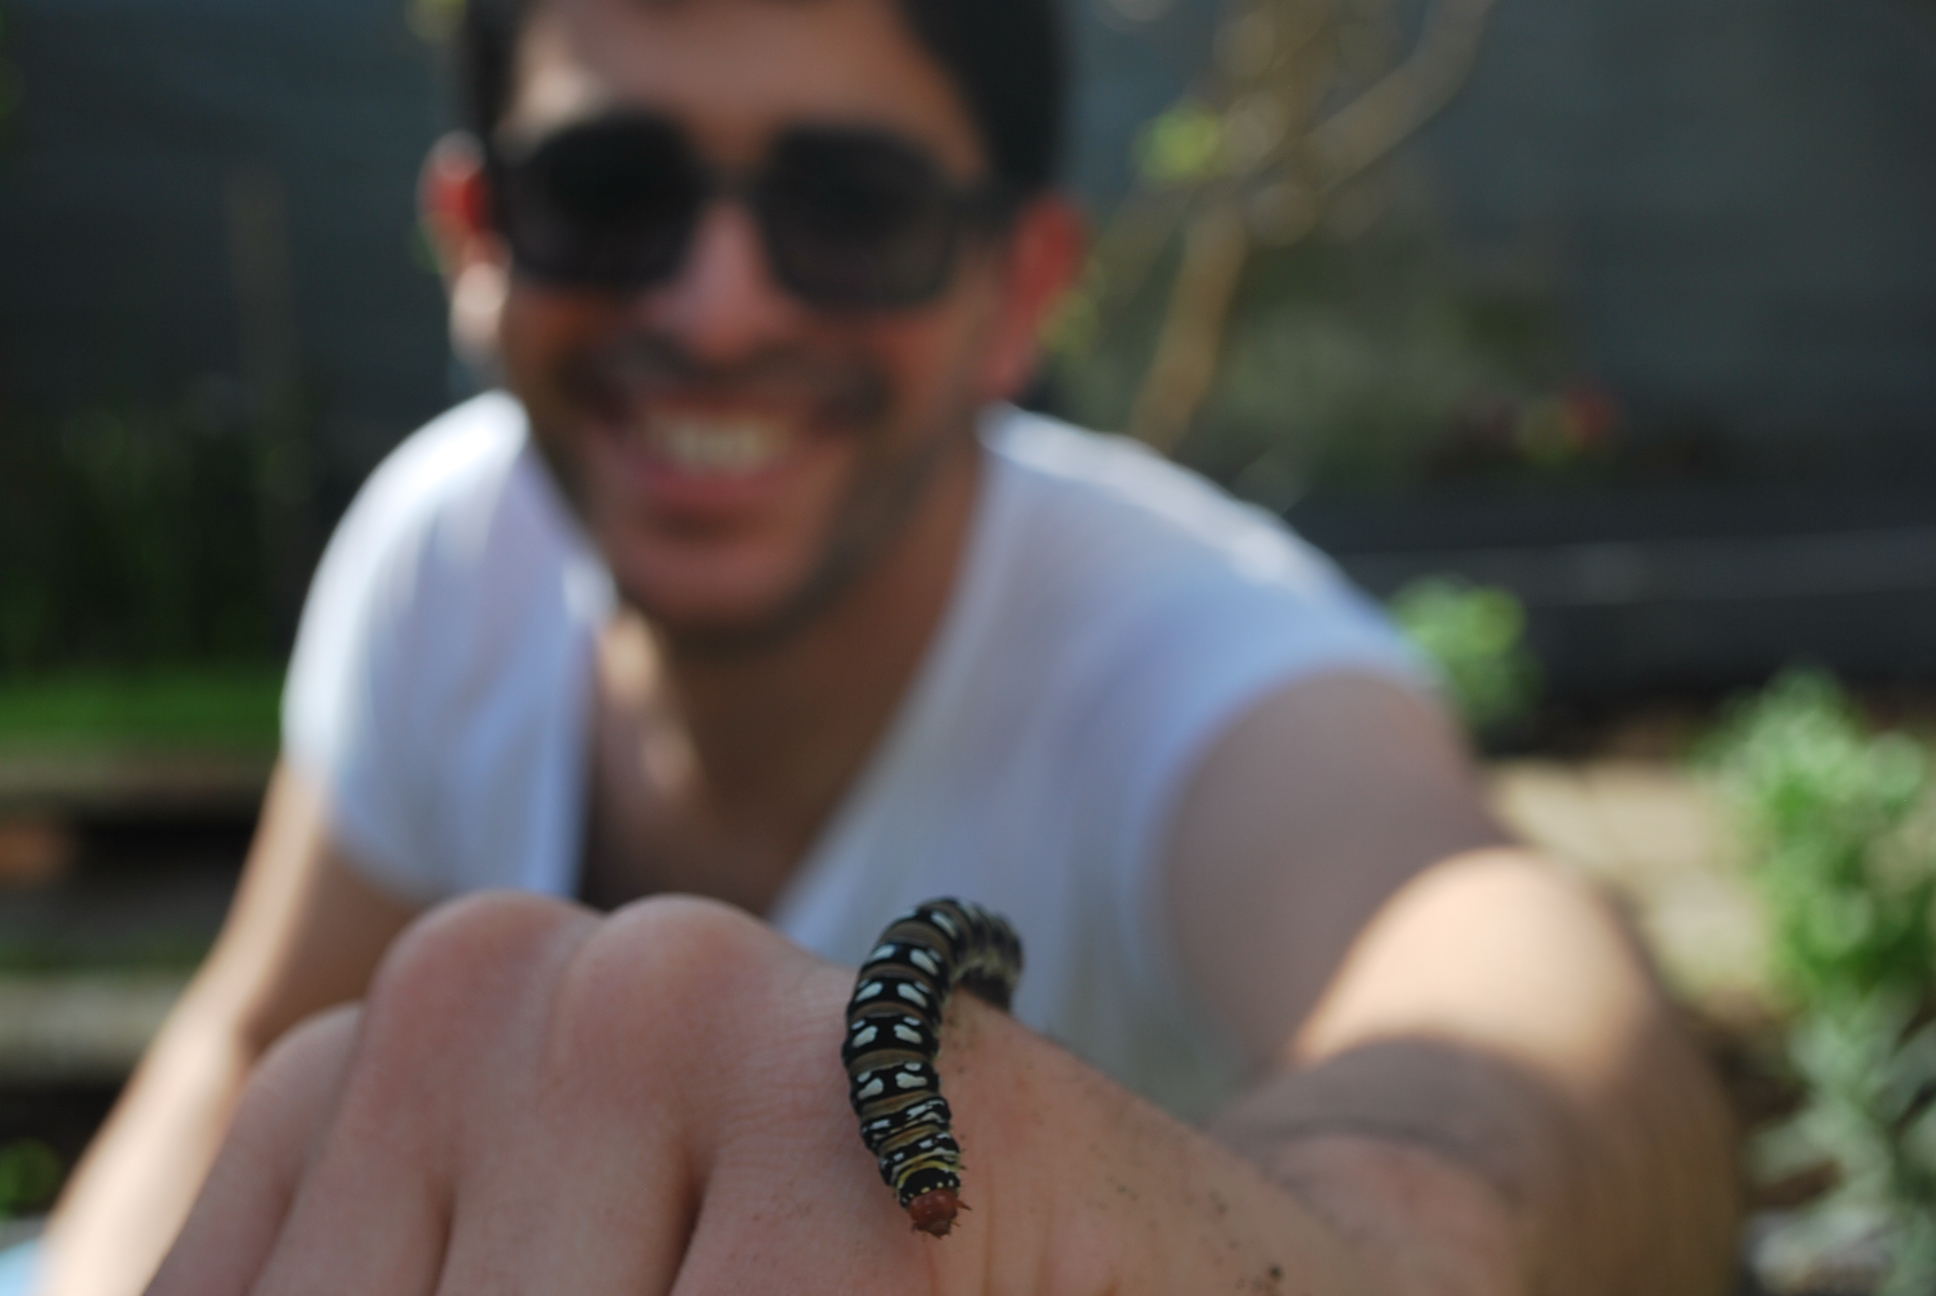 Volunteer finds caterpillar in garden